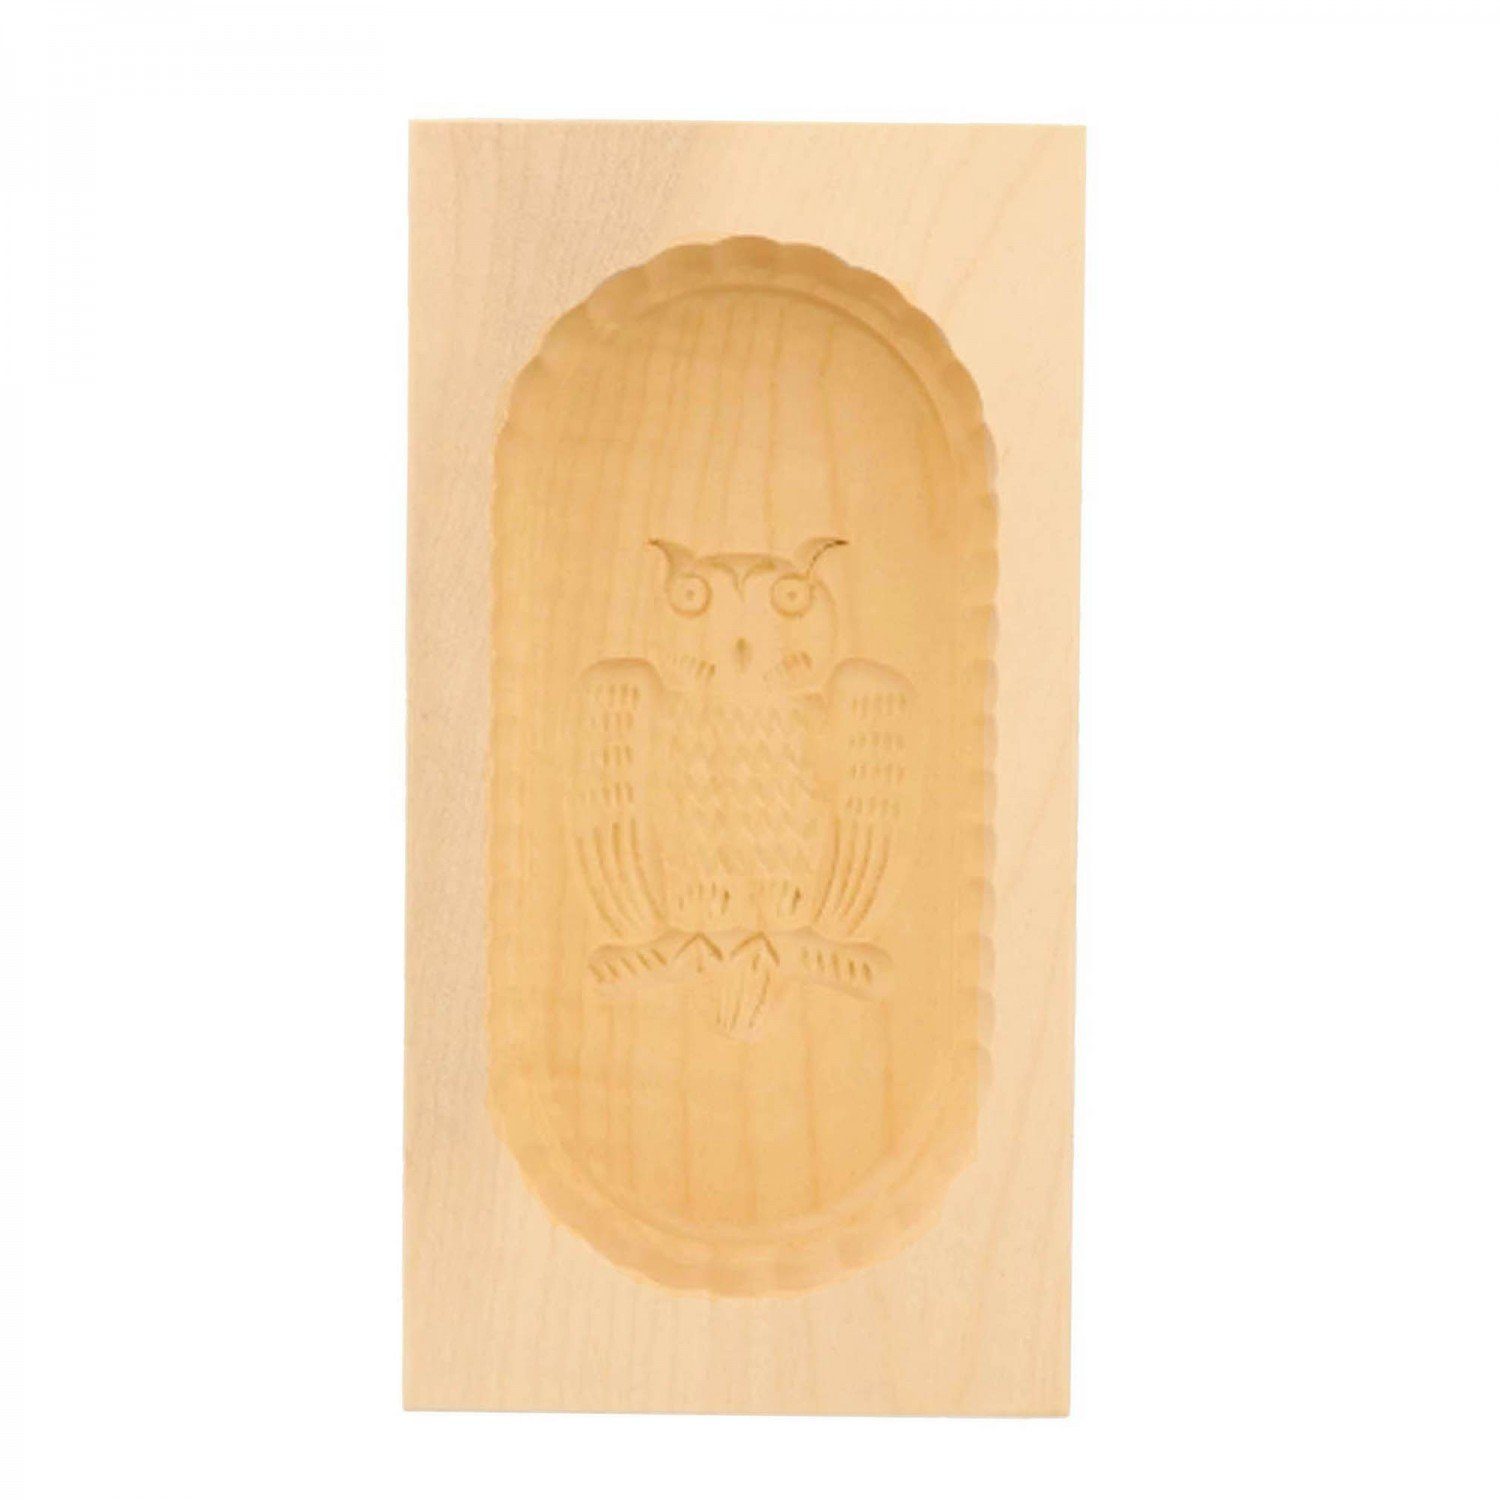 mitienda Servierplatte Butterform aus Holz Eulen Motiv, Sturz-Form 250g